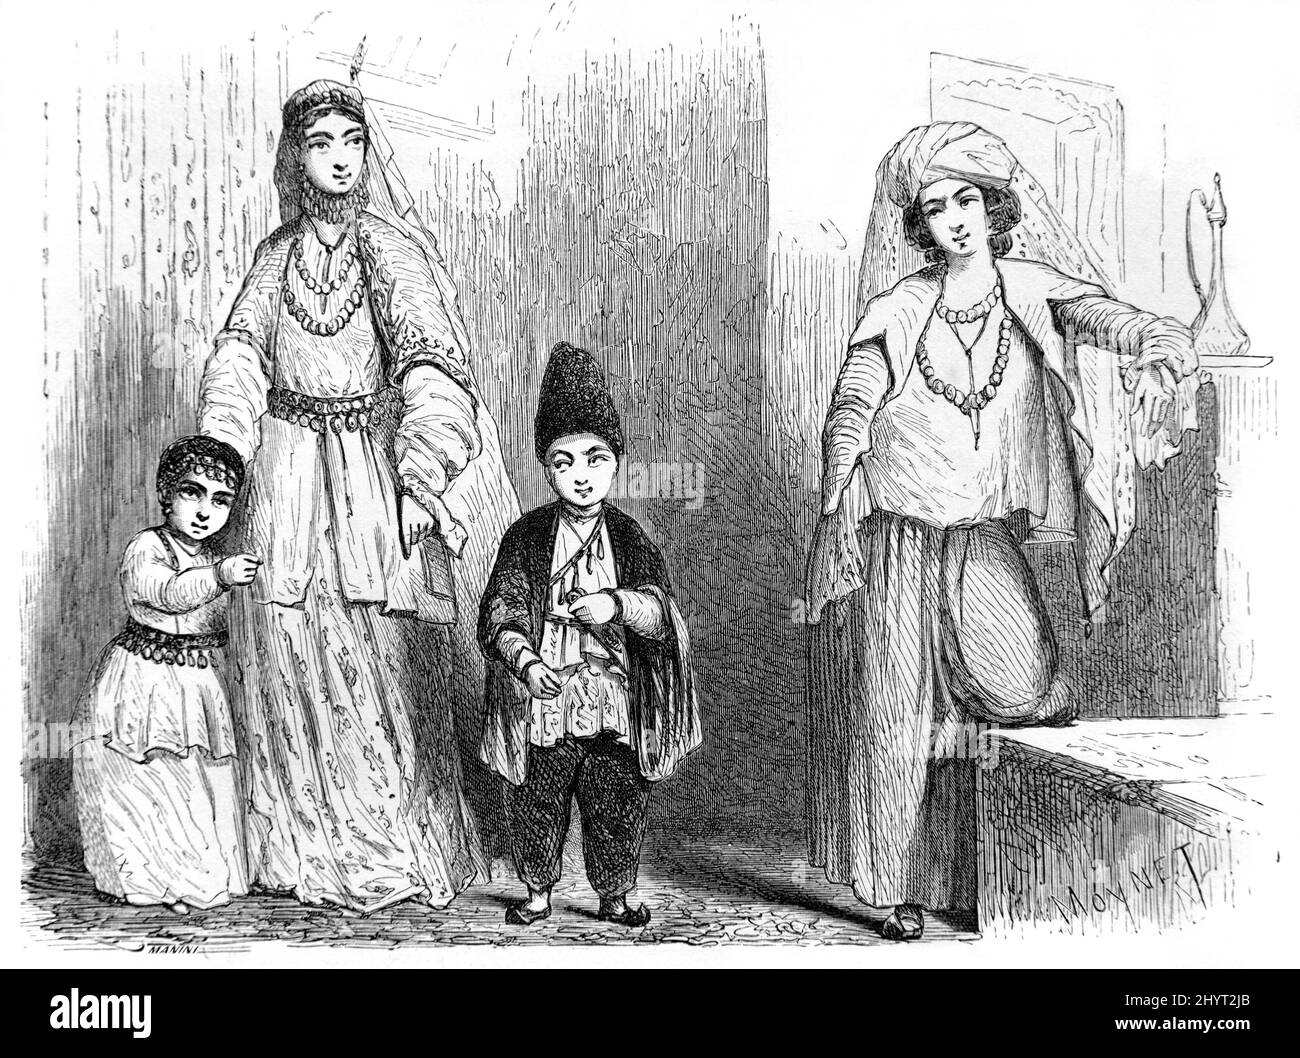 Femmes et enfants portant des vêtements traditionnels ou un costume folklorique Bakou Azerbaïdjan. Illustration ancienne ou gravure 1860. Banque D'Images